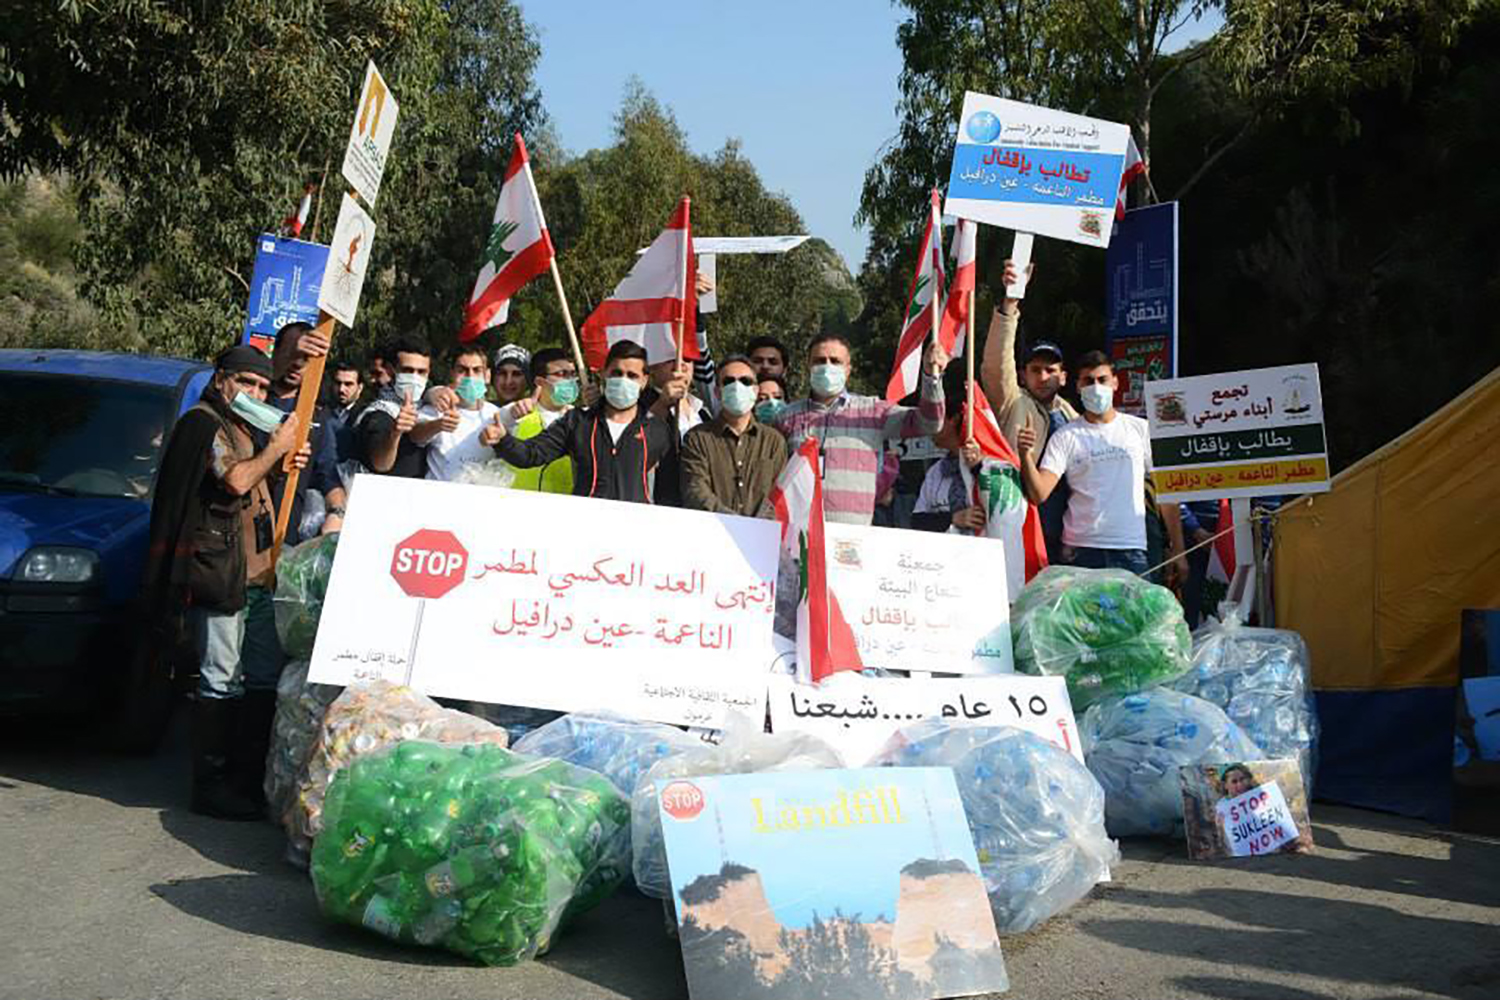 Le 17 janvier 2014, Paul ABI RACHED et d’autres militants écologistes déposent des sacs d’ordures sur la route afin de protester contre la décharge de Naahmé, ville côtière du Liban, située dans le district du CHOUF ©Paul ABI RACHED